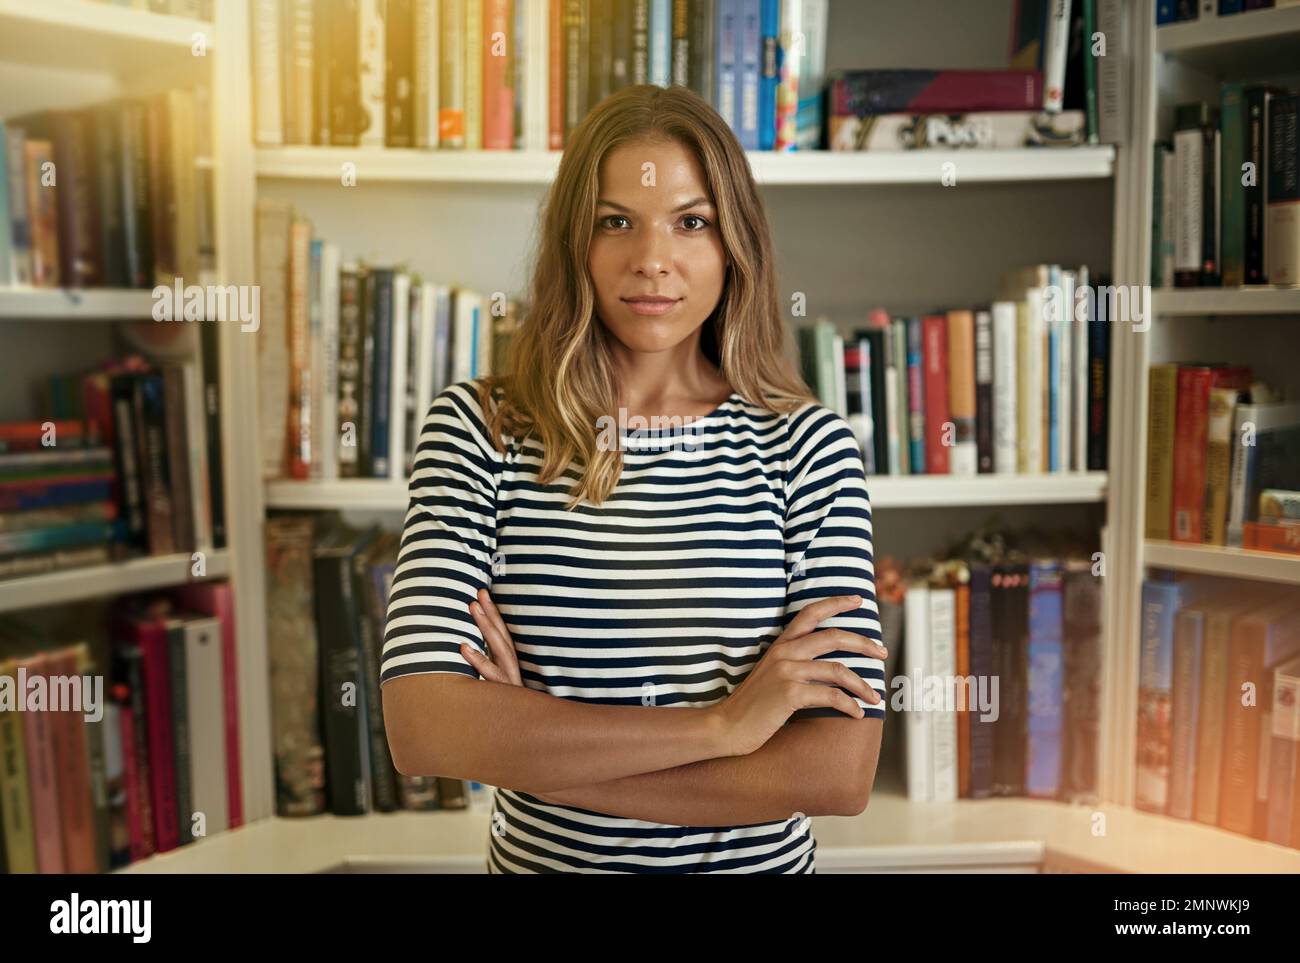 Mein Geschäft floriert. Porträt einer Frau, die in ihrem Heimbüro vor Bücherregalen steht. Stockfoto